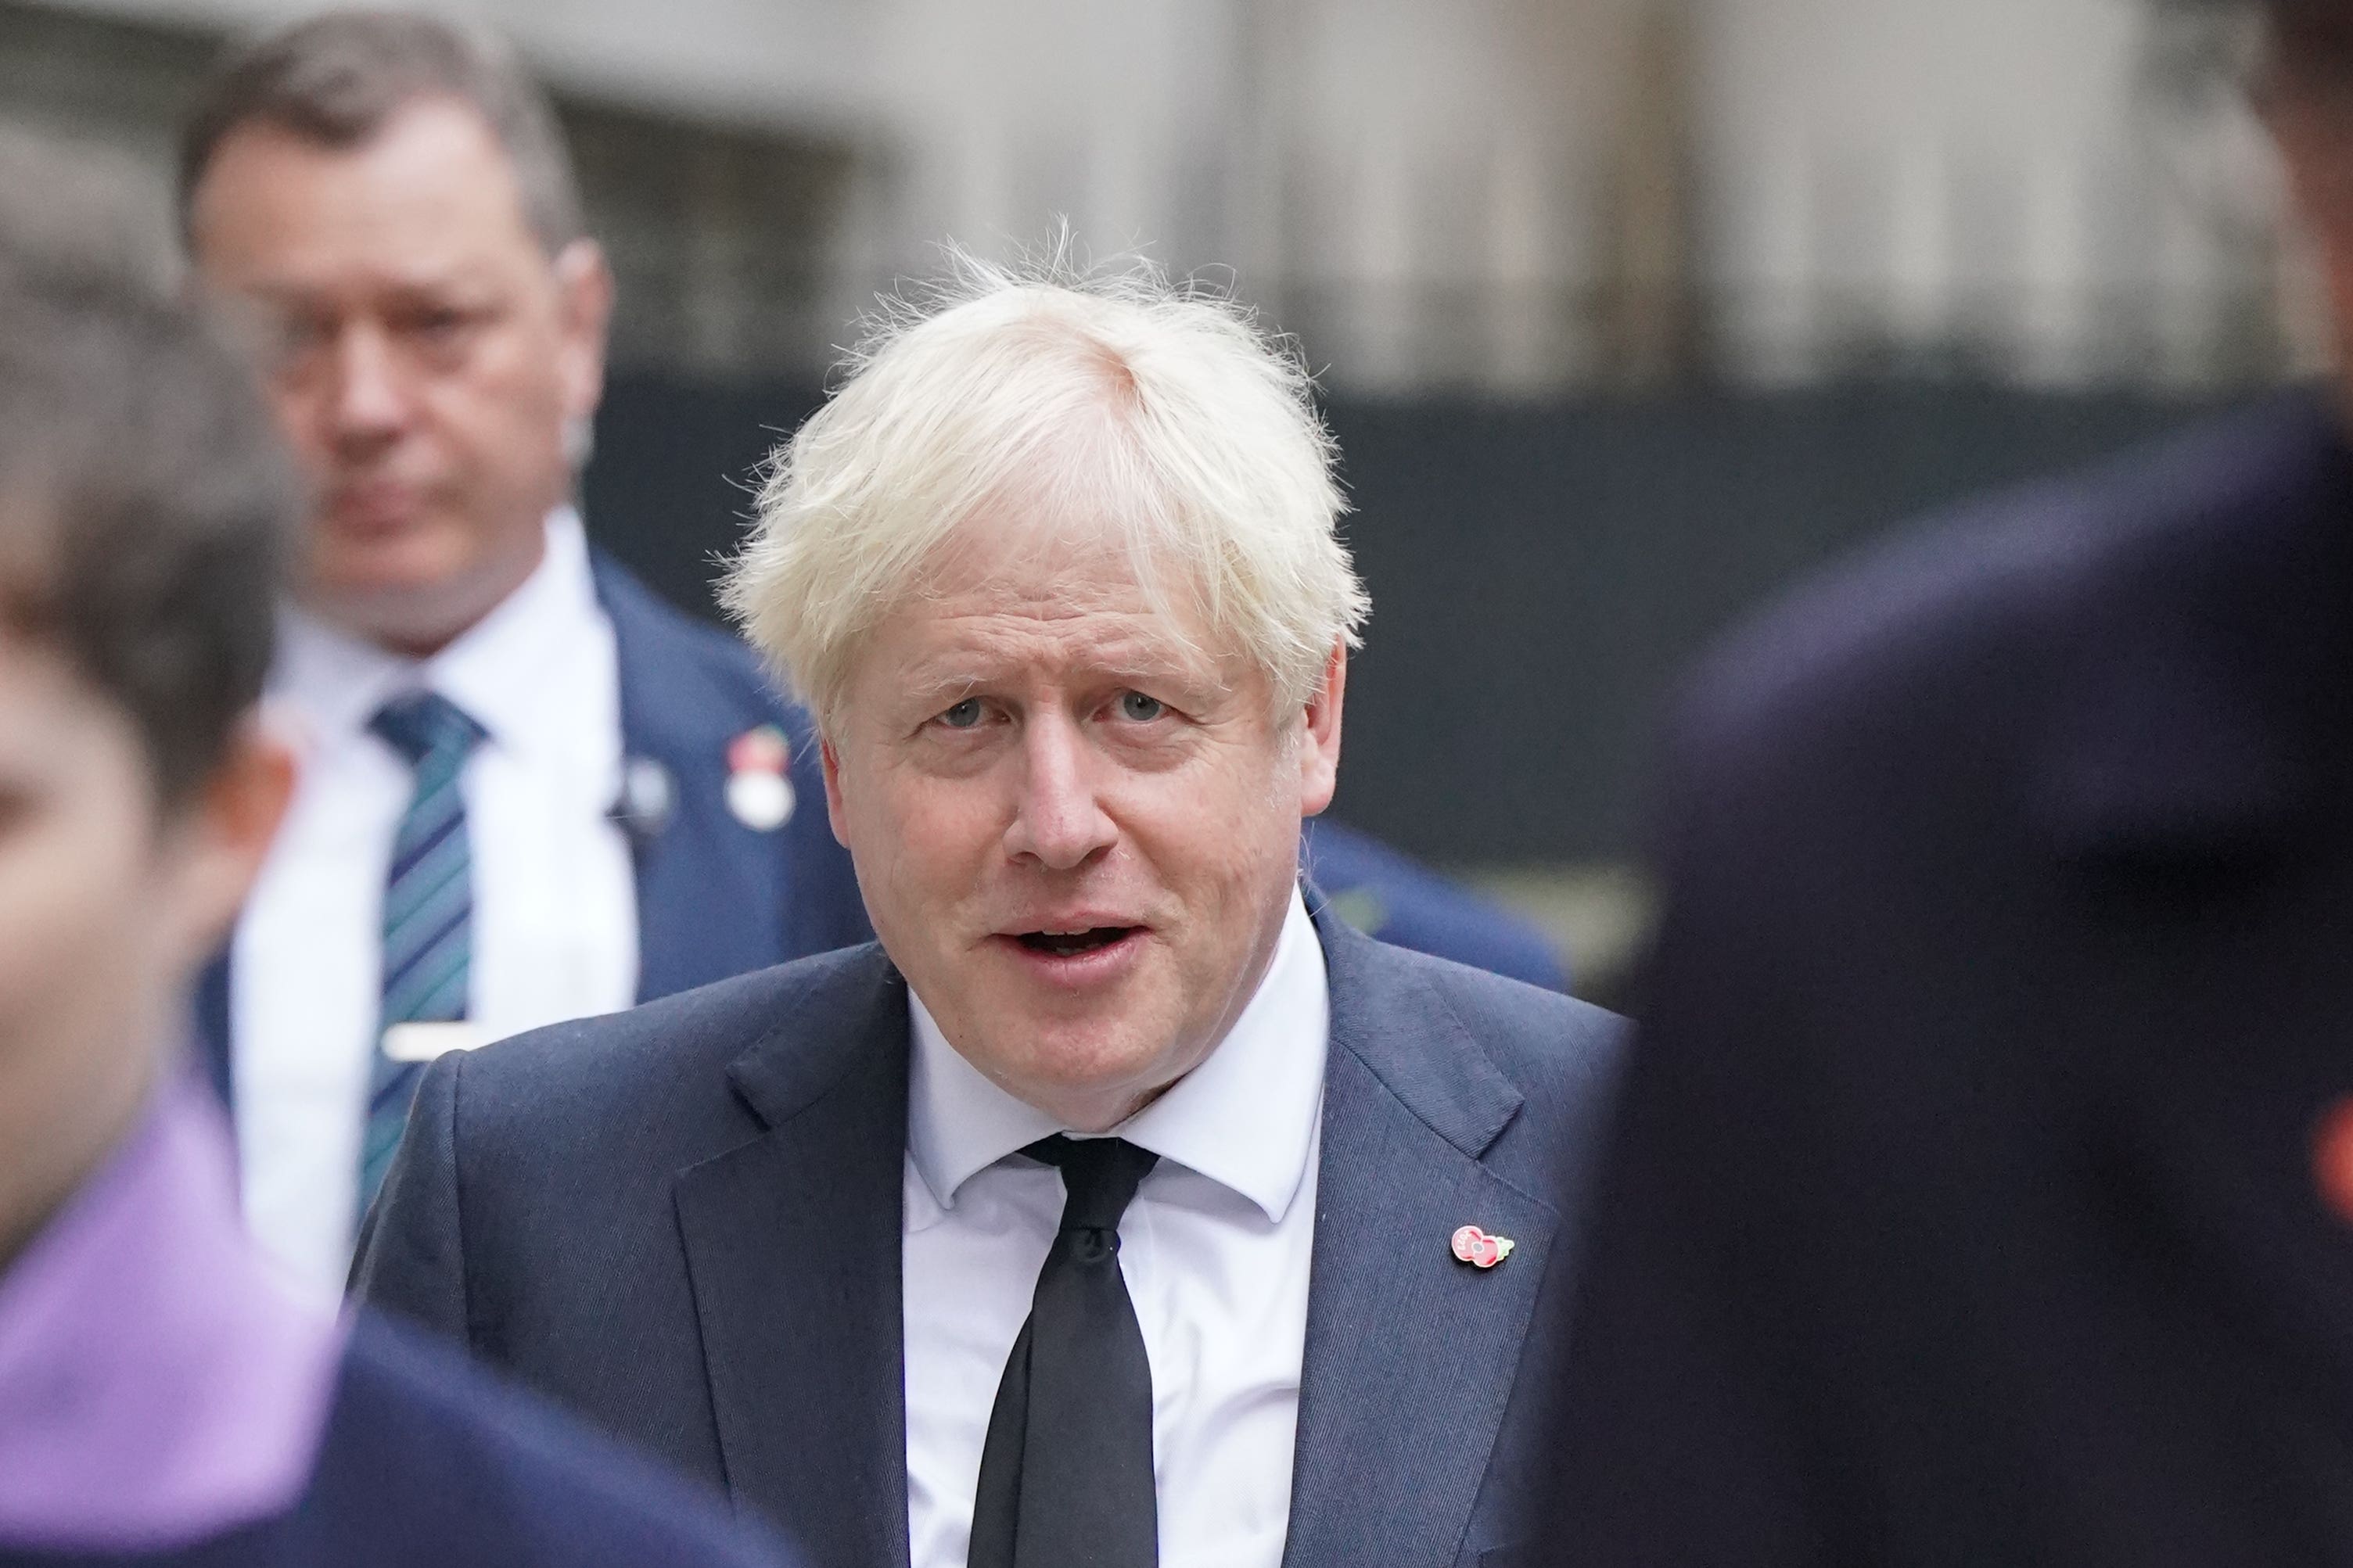 Former PM Boris Johnson under pressure over BBC row